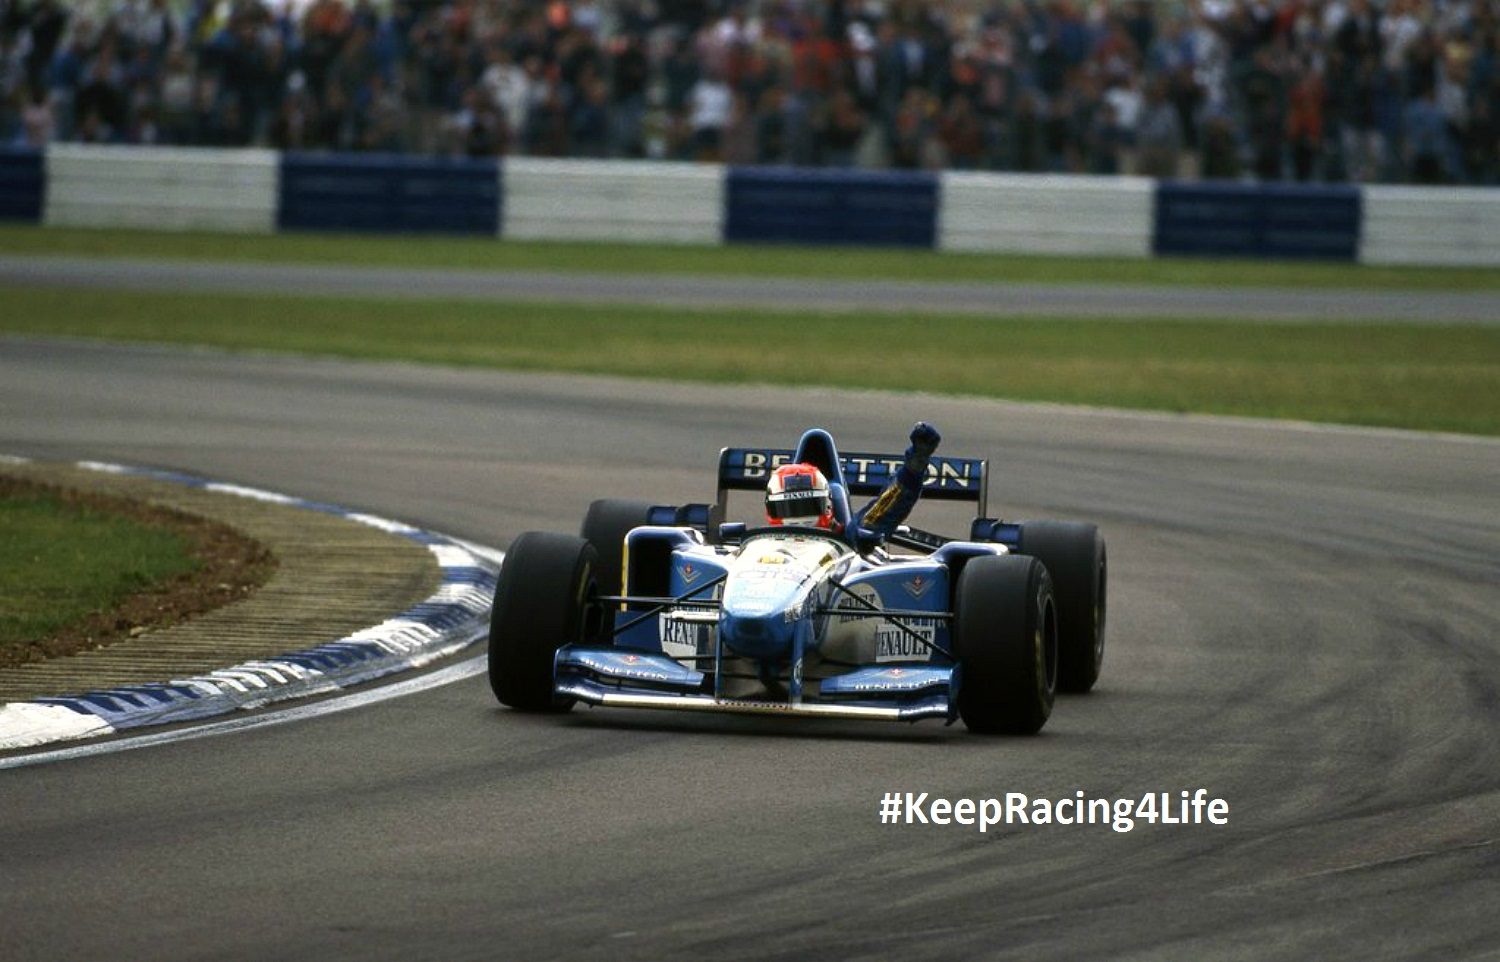 Johnny Herbert Wins The 1995 British GP